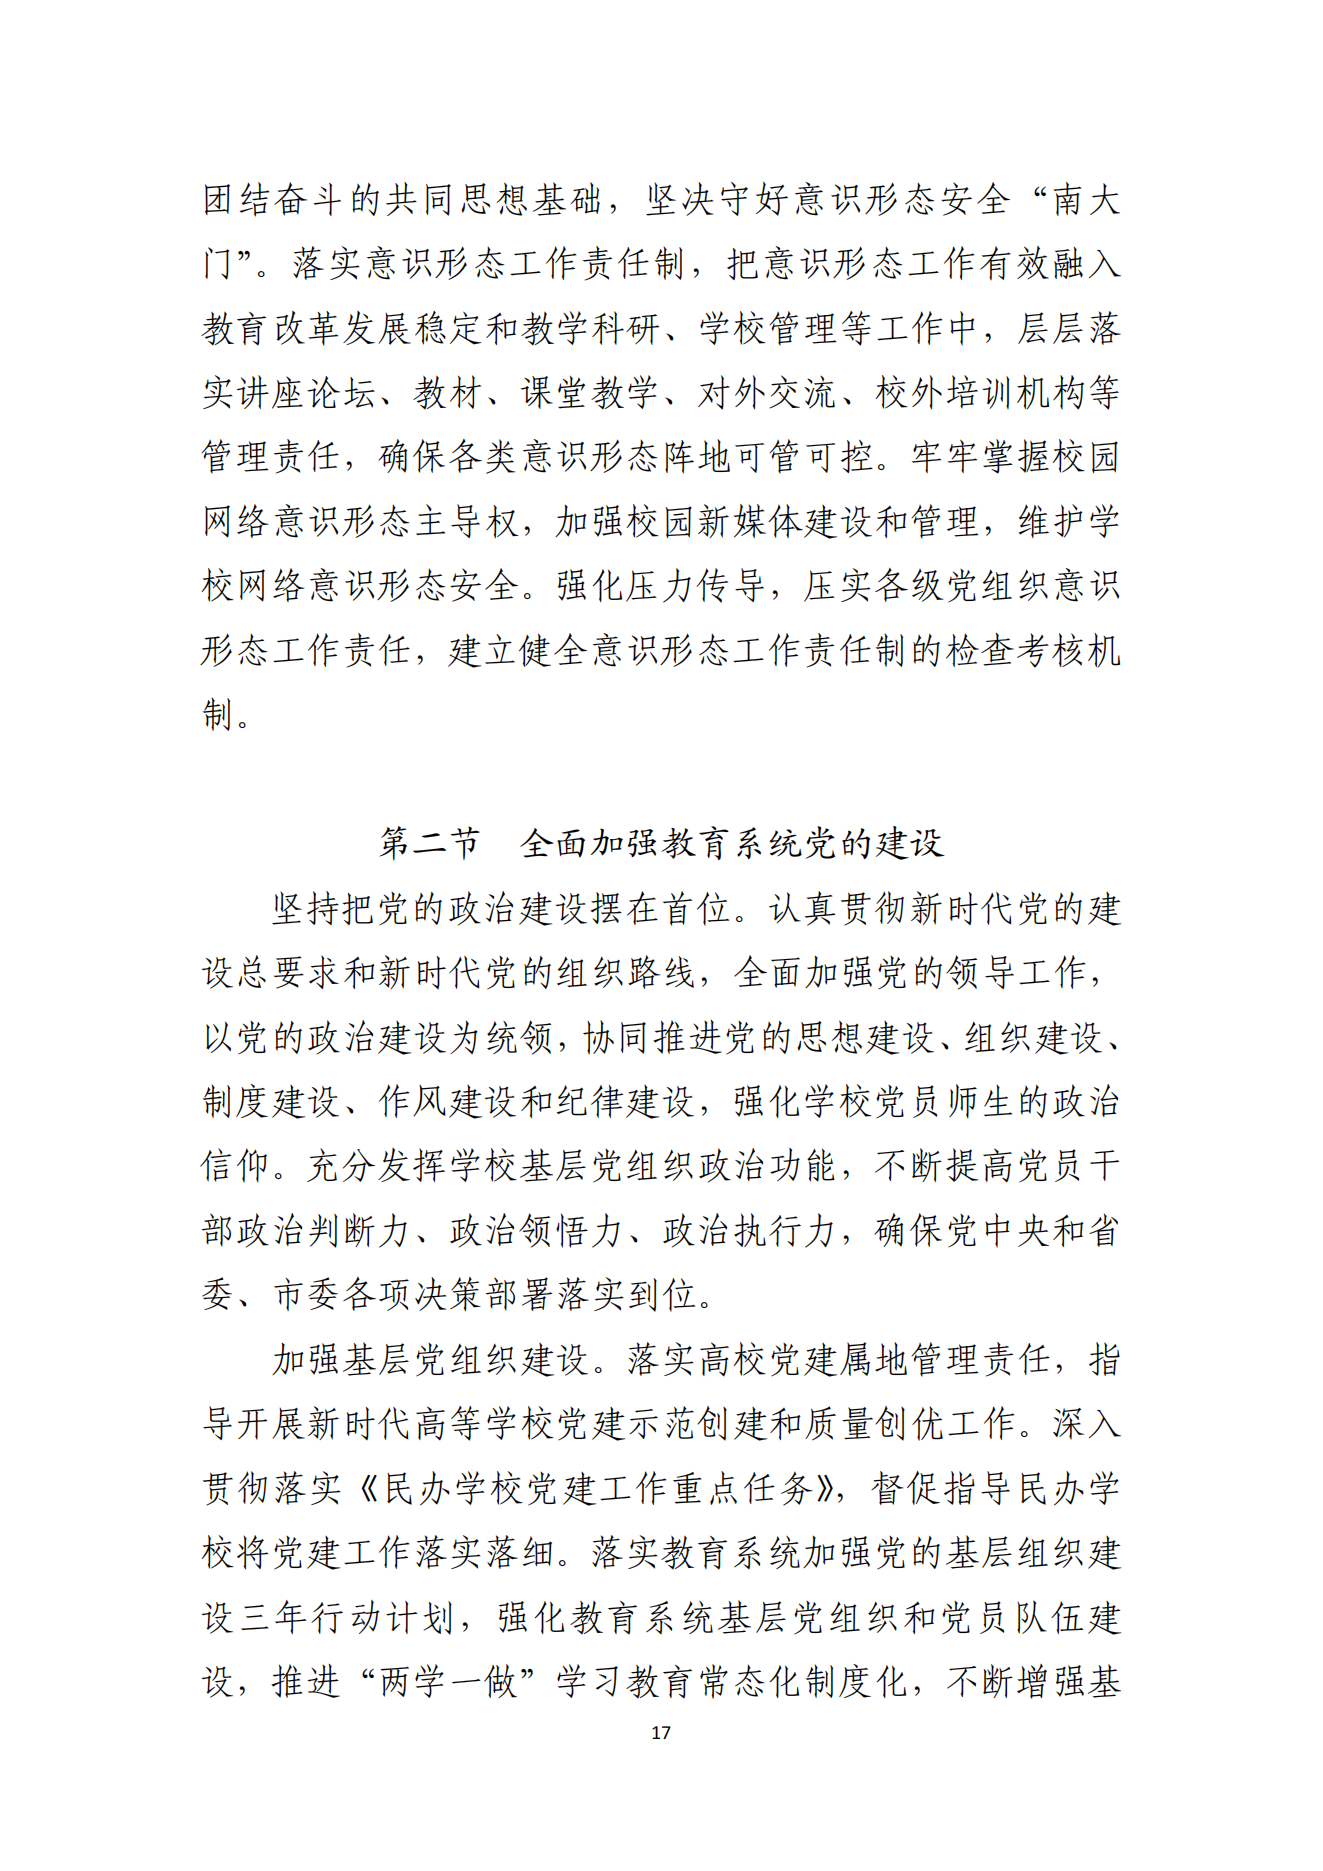 湛江市人民政府办公室关于印发湛江市教育发展“十四五”规划的通知_16.png